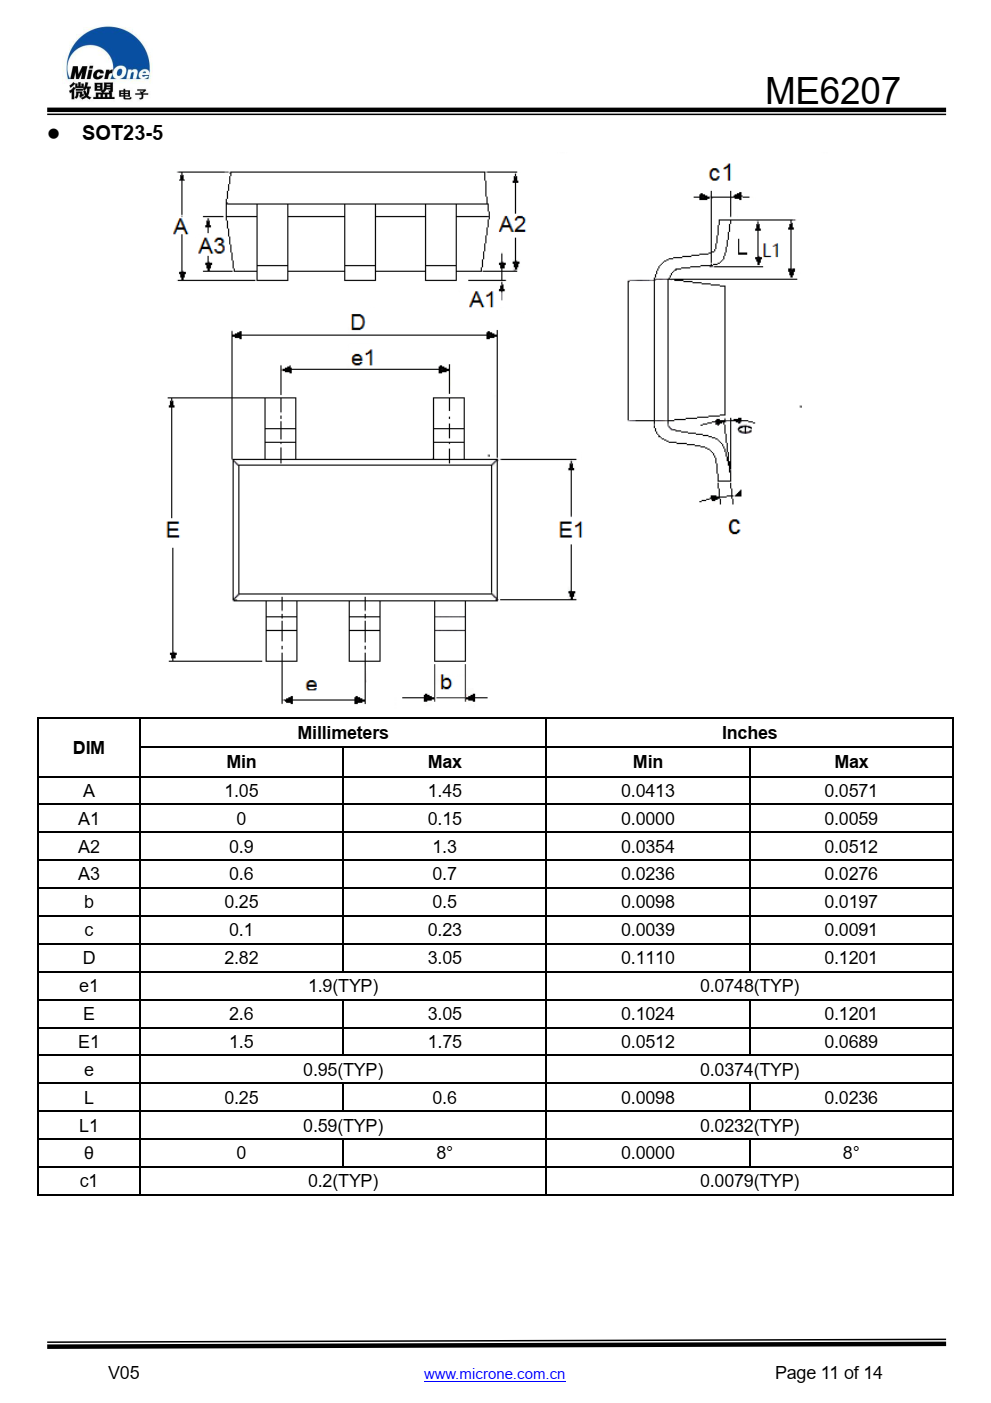 ME6207系列是一种正电压调节器  具有低压差、高输出电压  准确度高，低成本  基于CMOS工艺